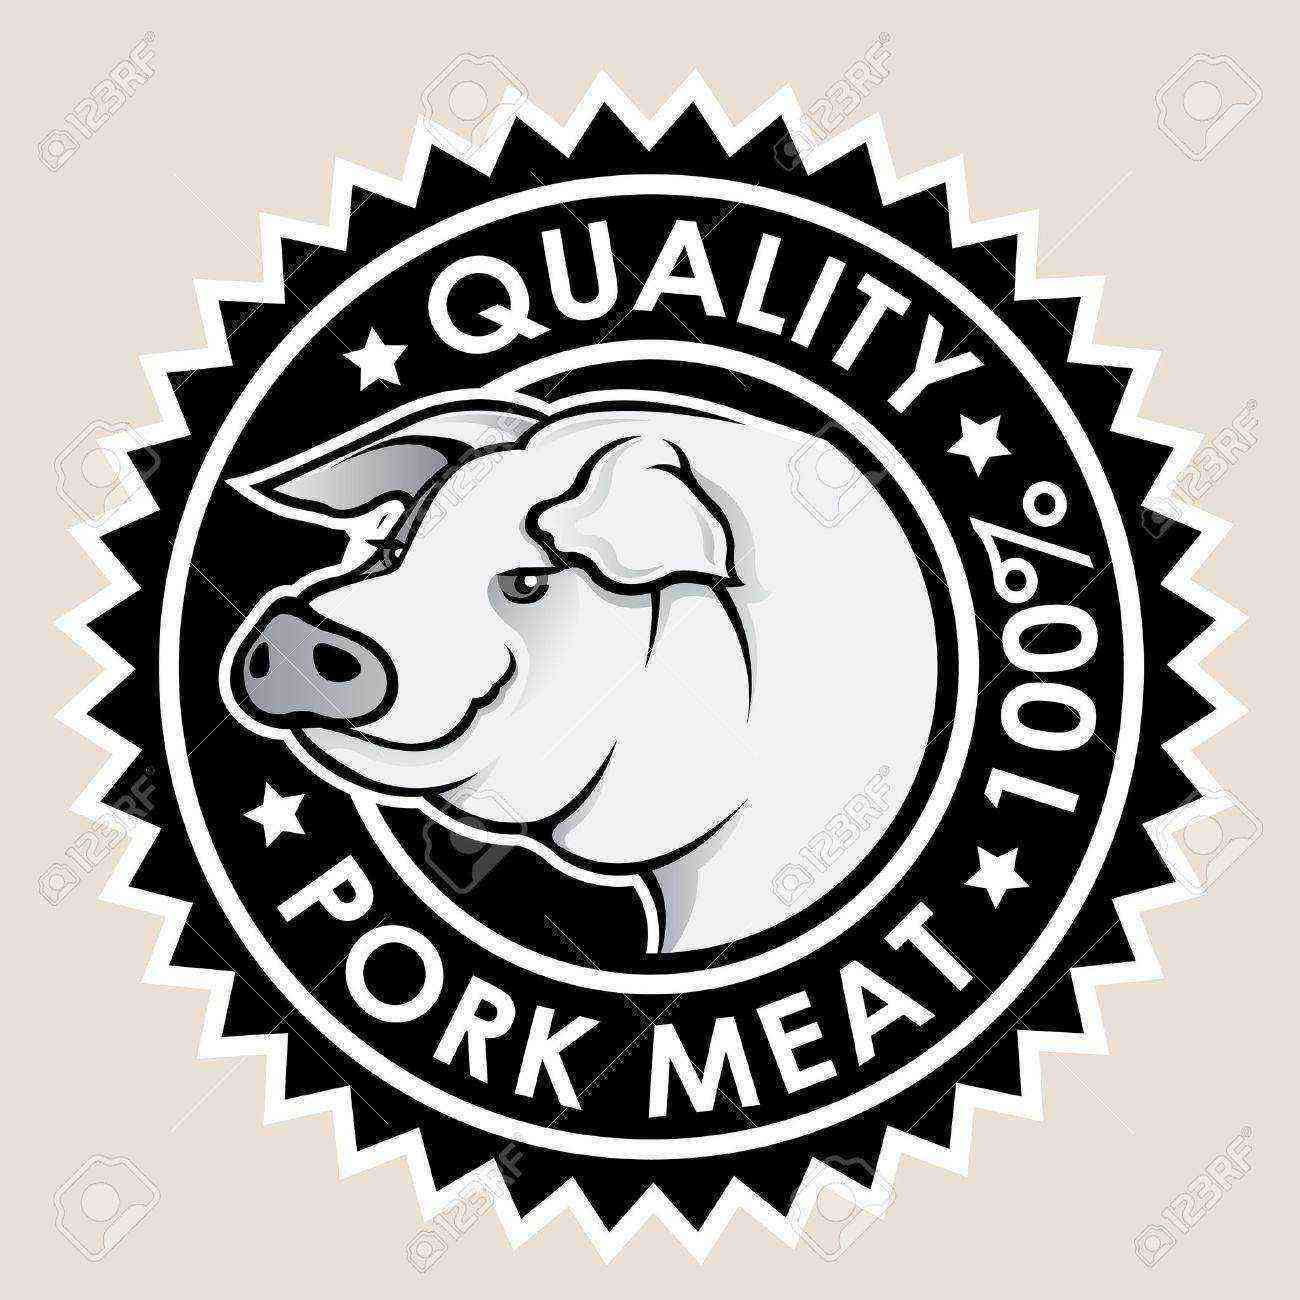 Varkensvlees kwaliteit